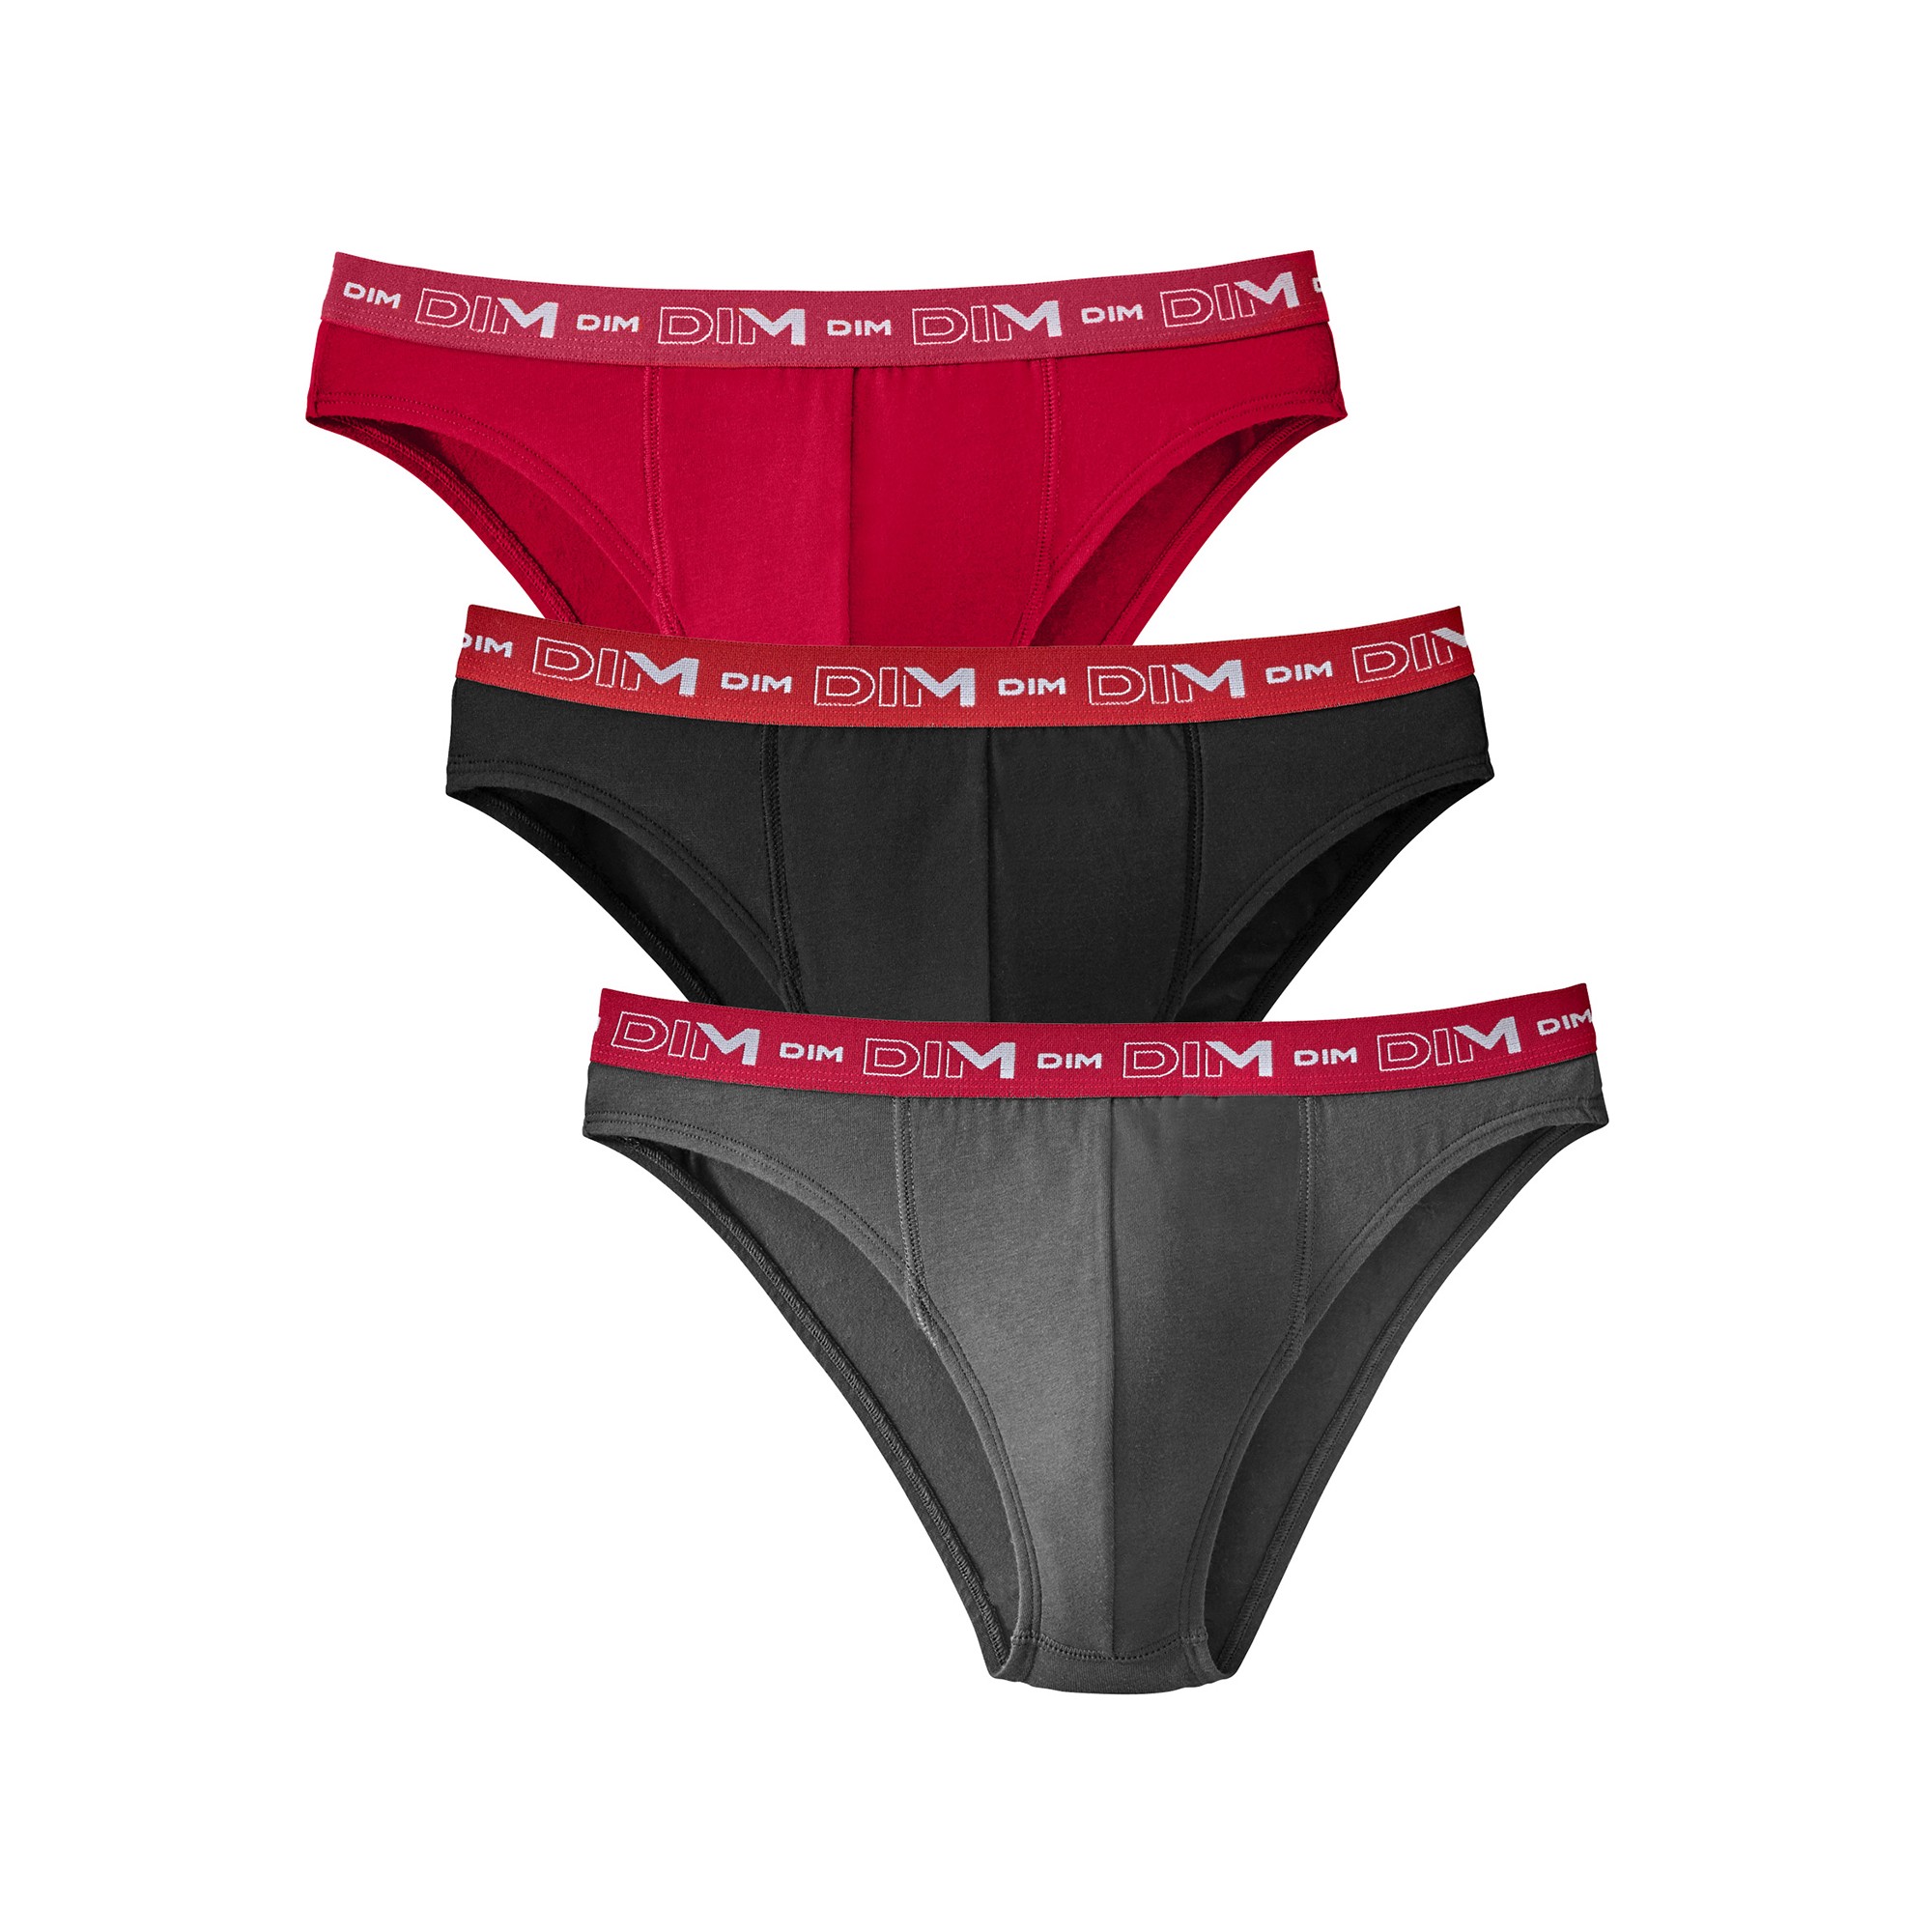 Slip coton stretch coloris assortis - lot de 3 - Xxxl - Gris/noir/rouge - Dim